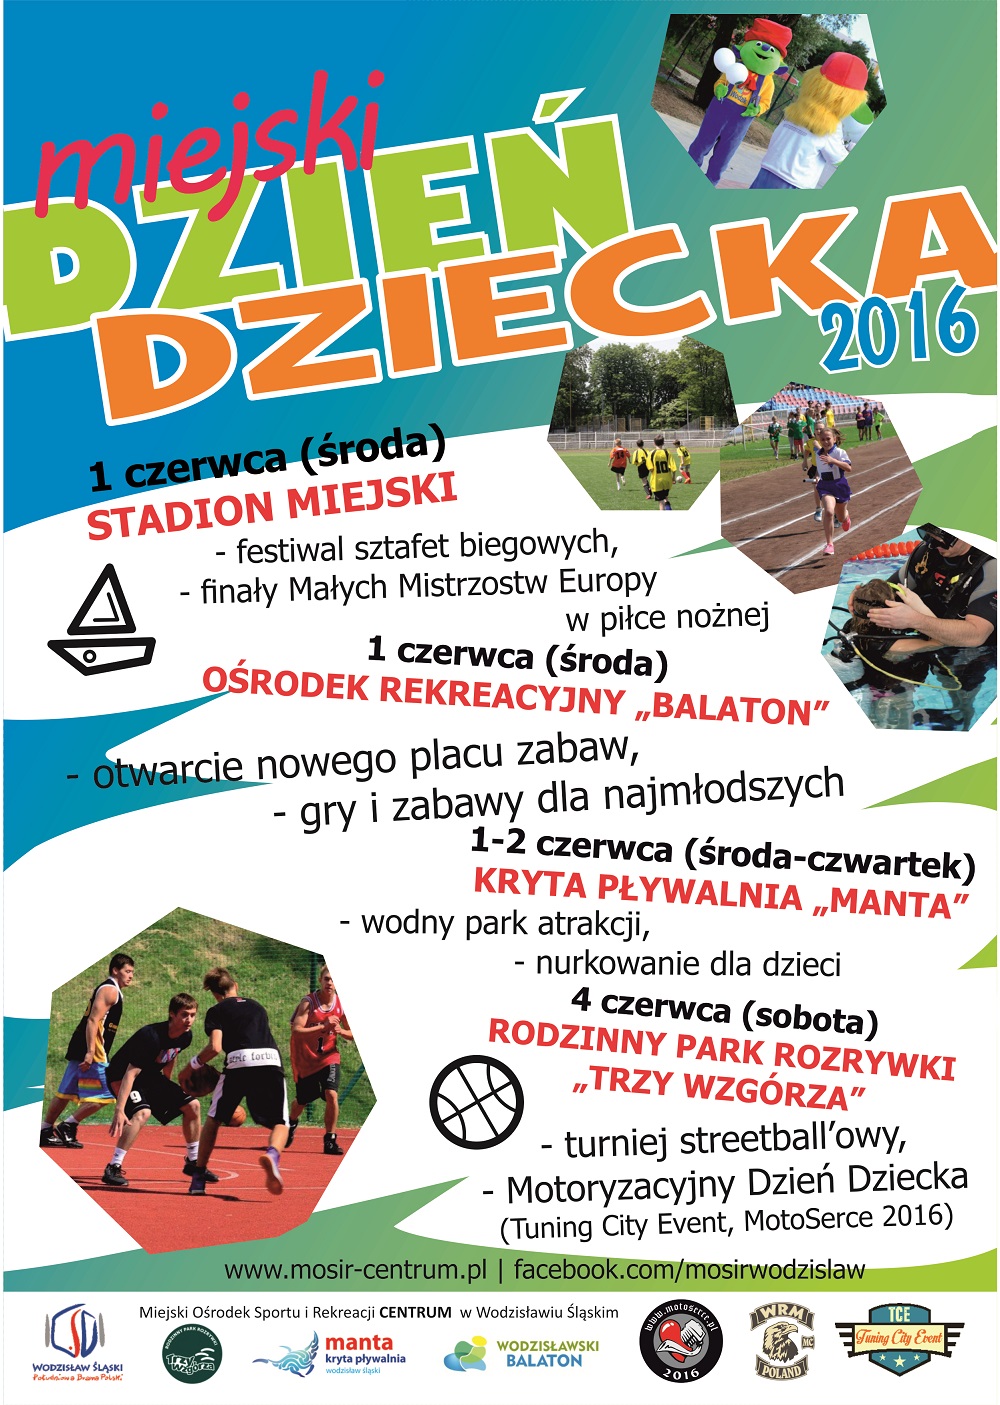 Plakat promujący Miejski Dzień Dziecka w Wodzisławiu Śląskim